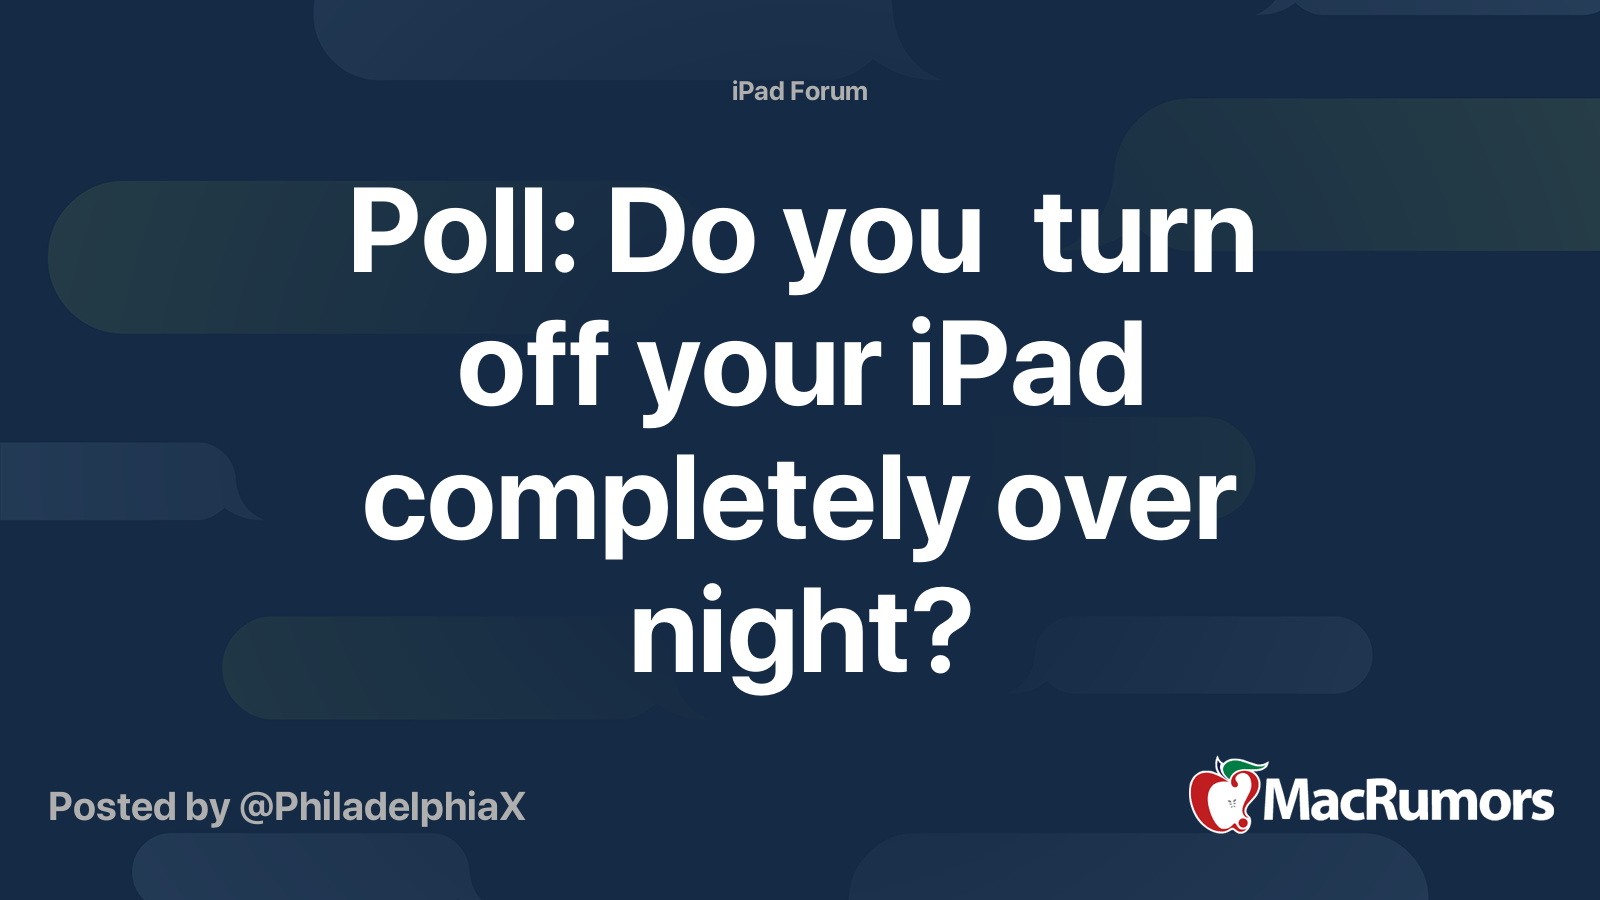 Měli byste v noci vypnout iPad?